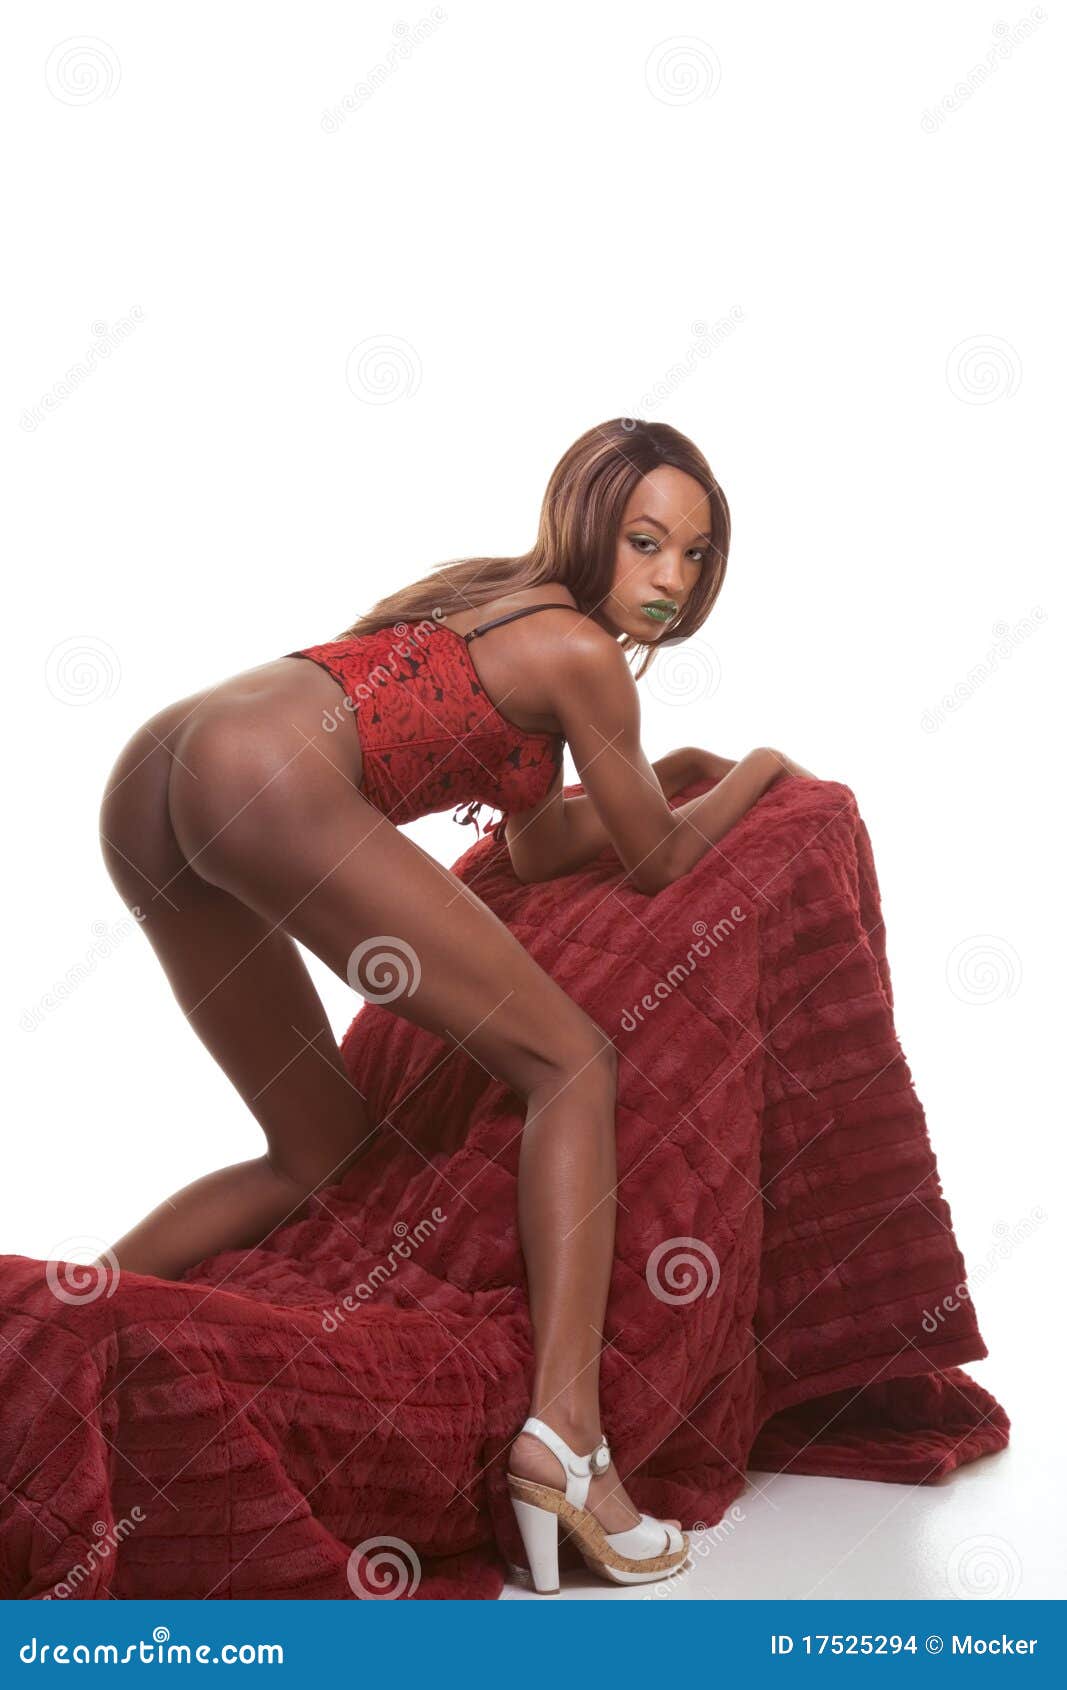 Black Woman Ass